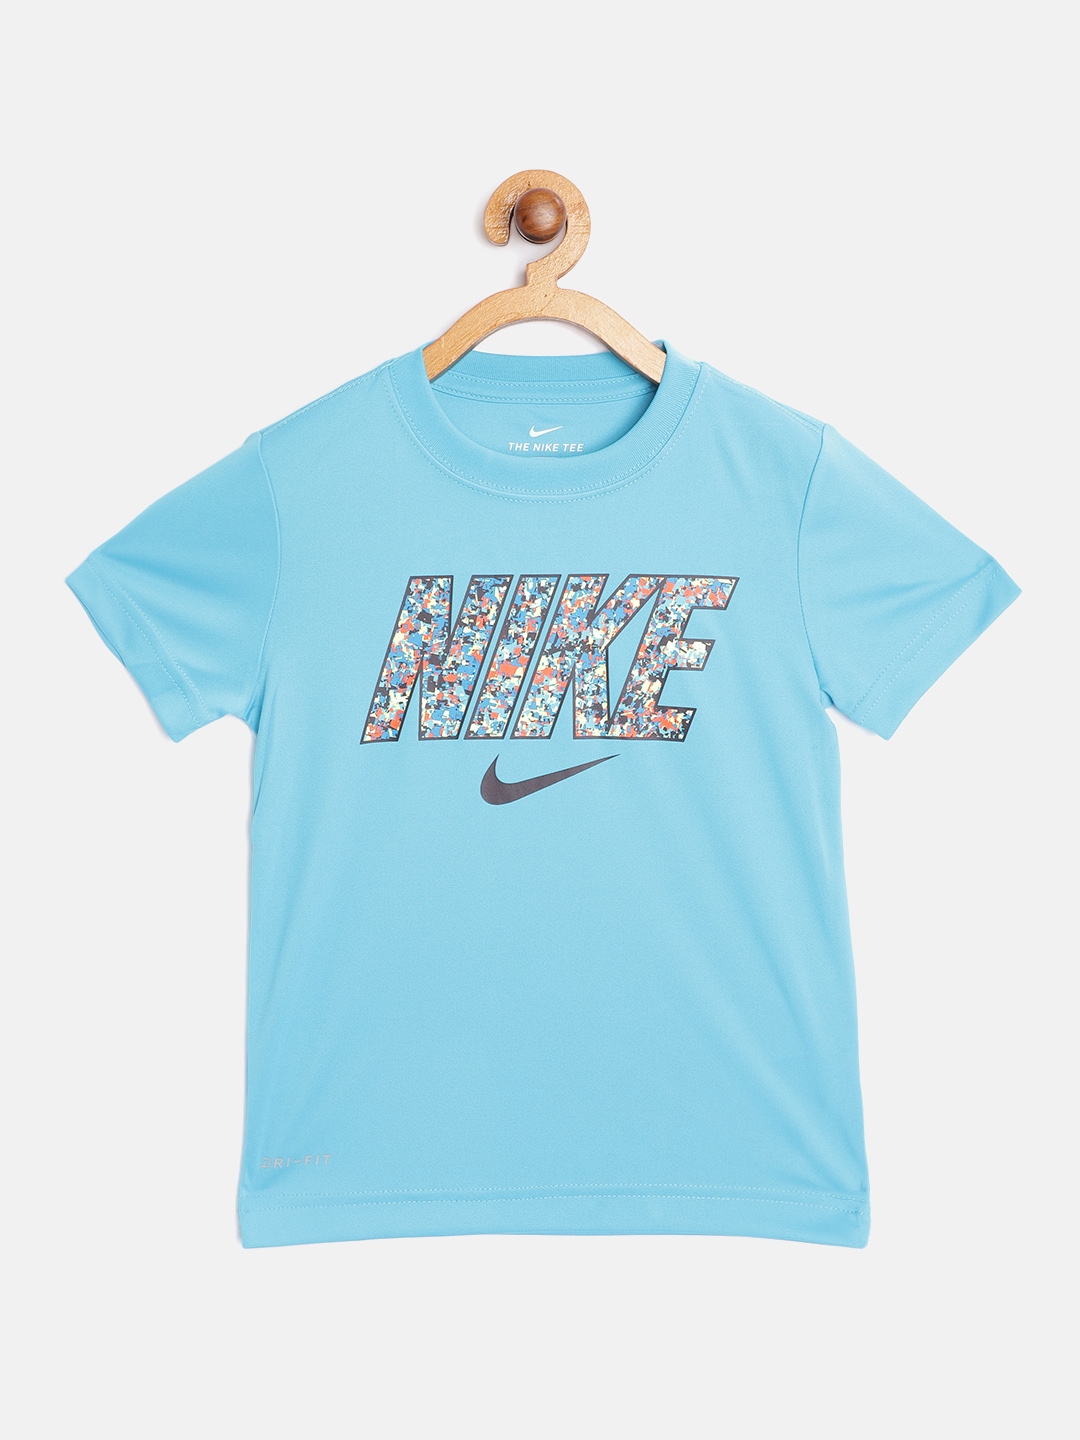 Buy Nike Boys Turquoise Blue Dri FIT Confetti Block Logo T Shirt ...